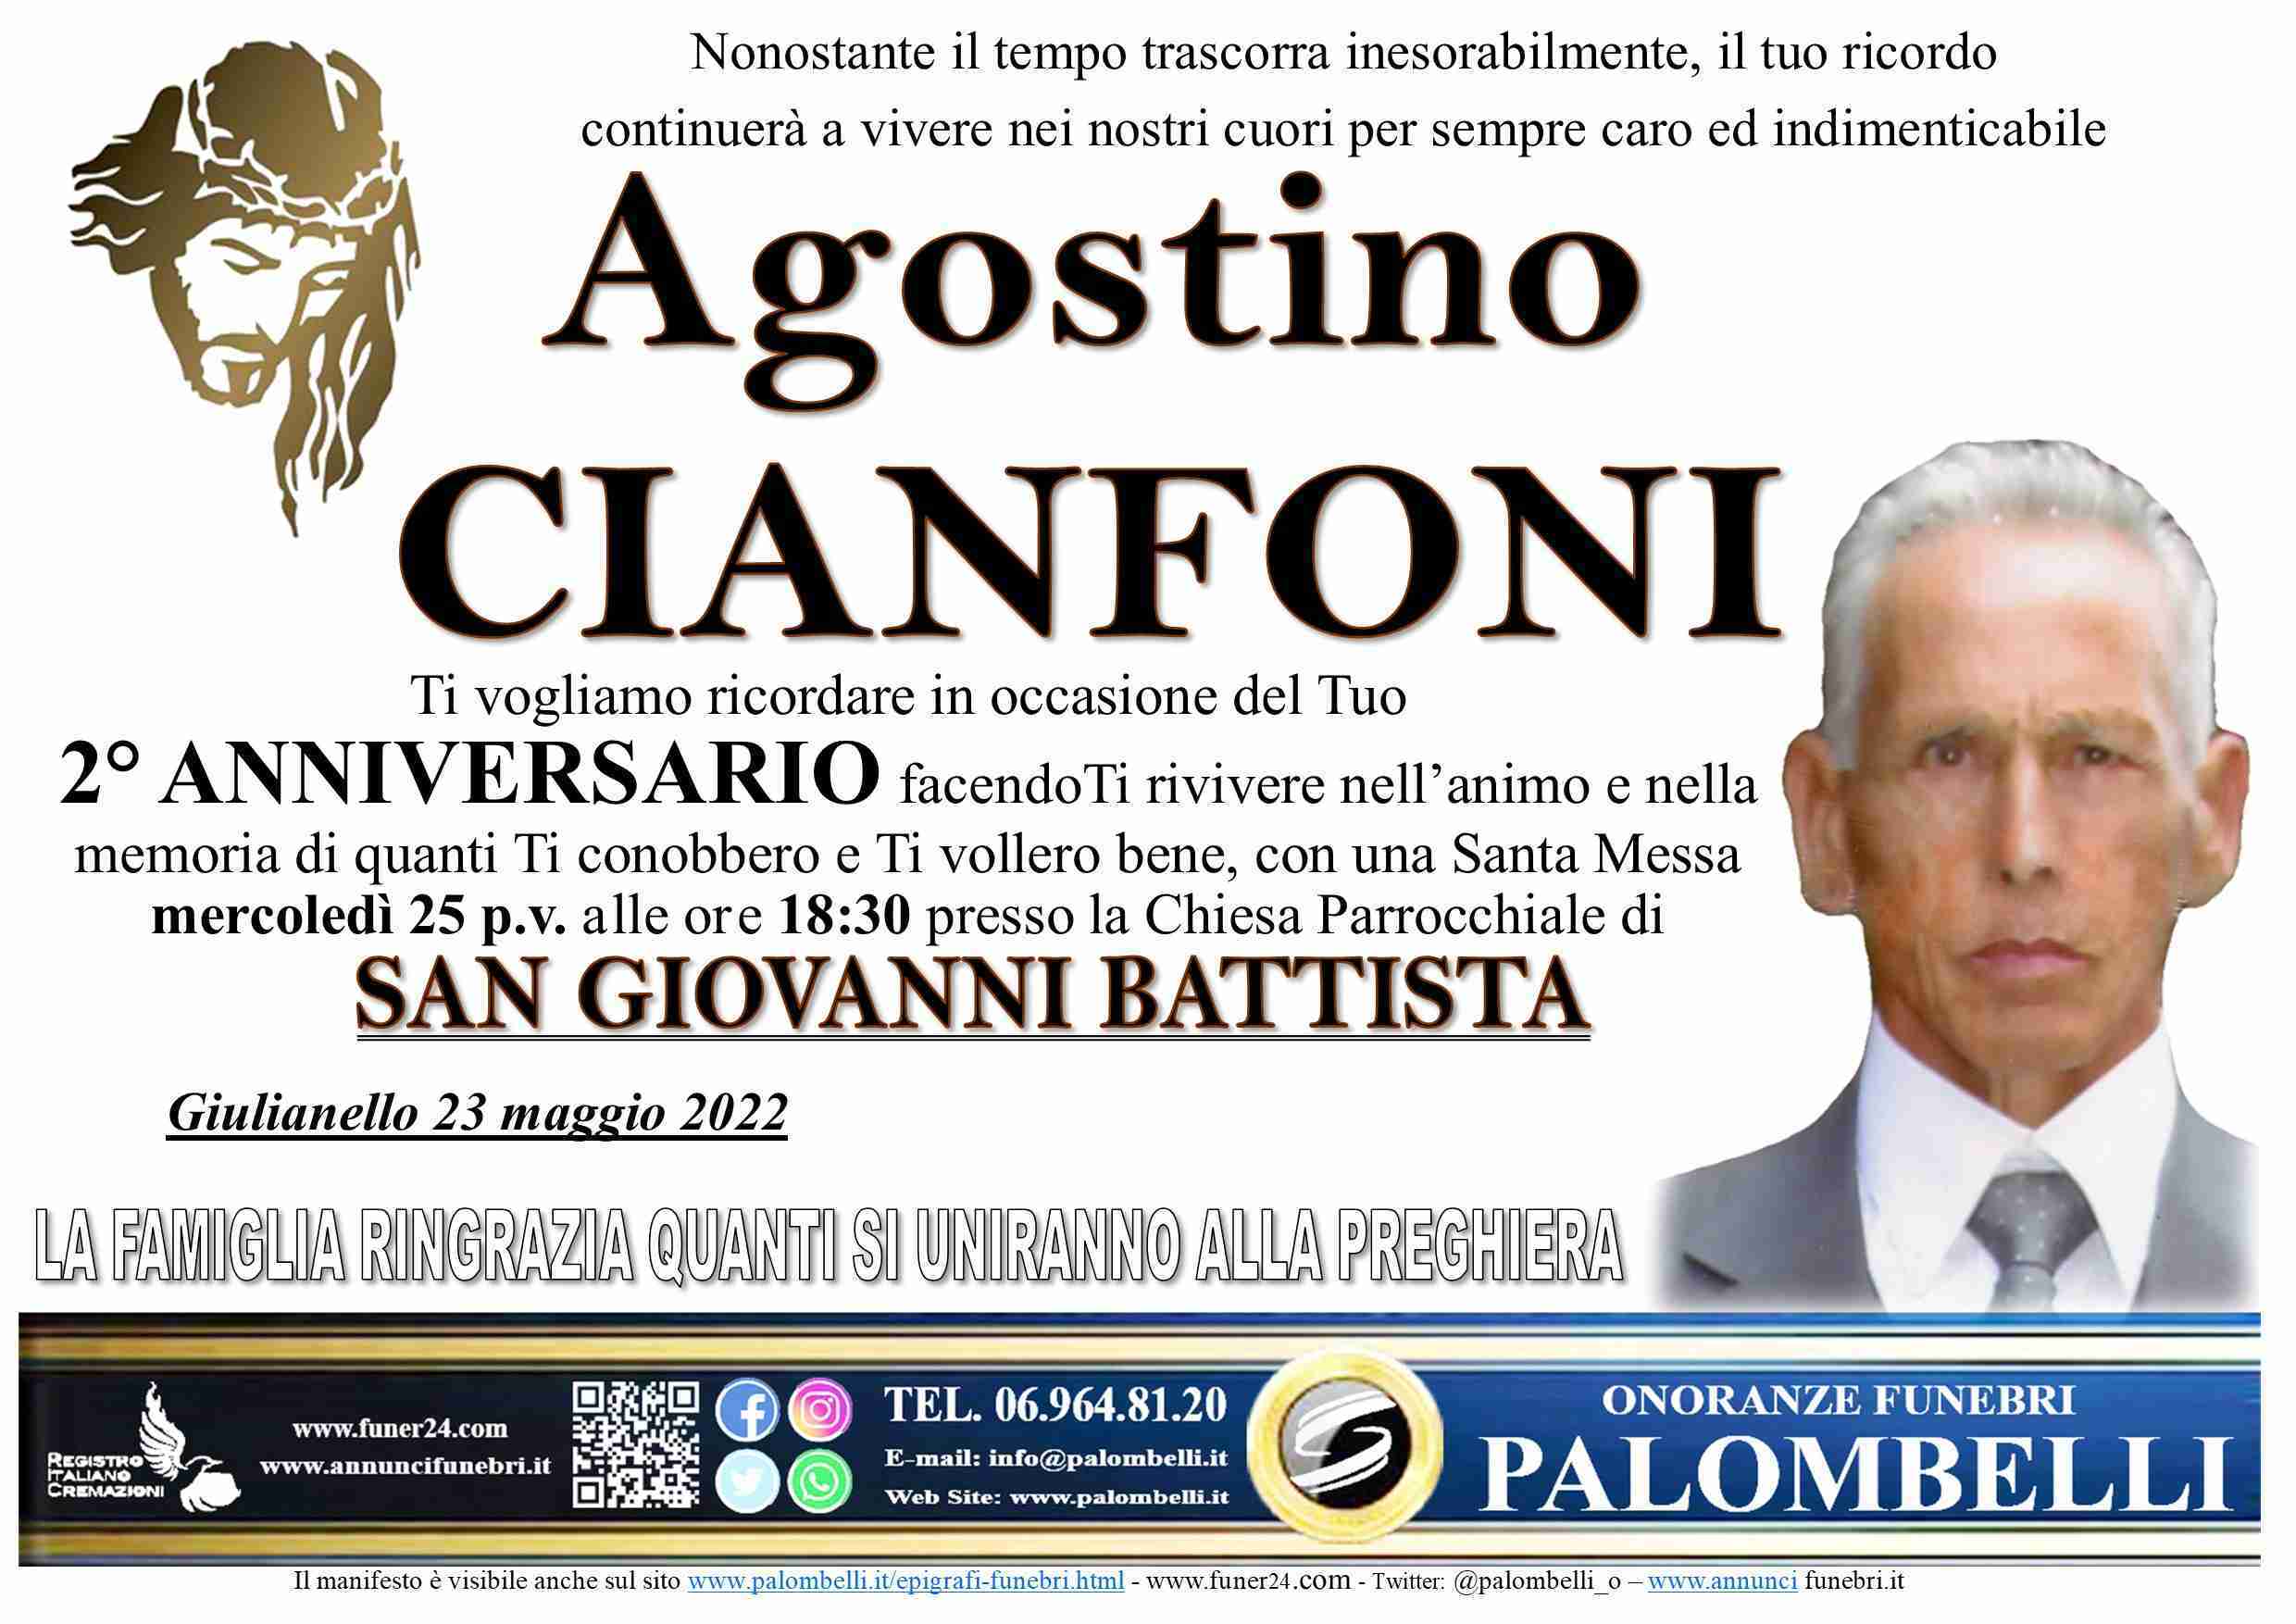 Agostino Cianfoni